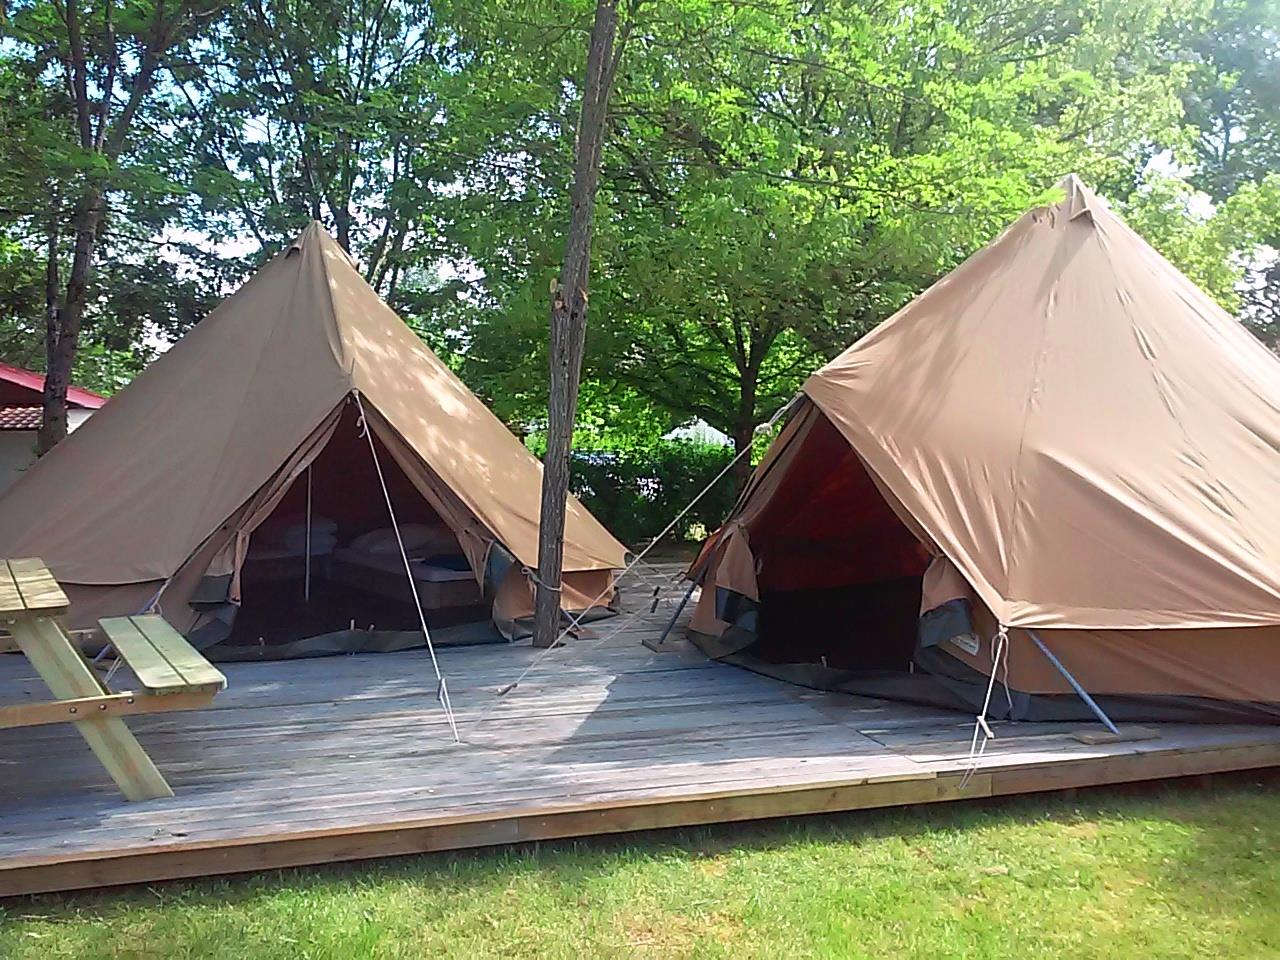 Huuraccommodatie - Tente Aménagée 2 Modules Sur Terrasse 1 Tente Repas Avec Cuisine Équipée Et 1 Tente Avec Un Espace Pour Dormir - Camping Las Patrasses